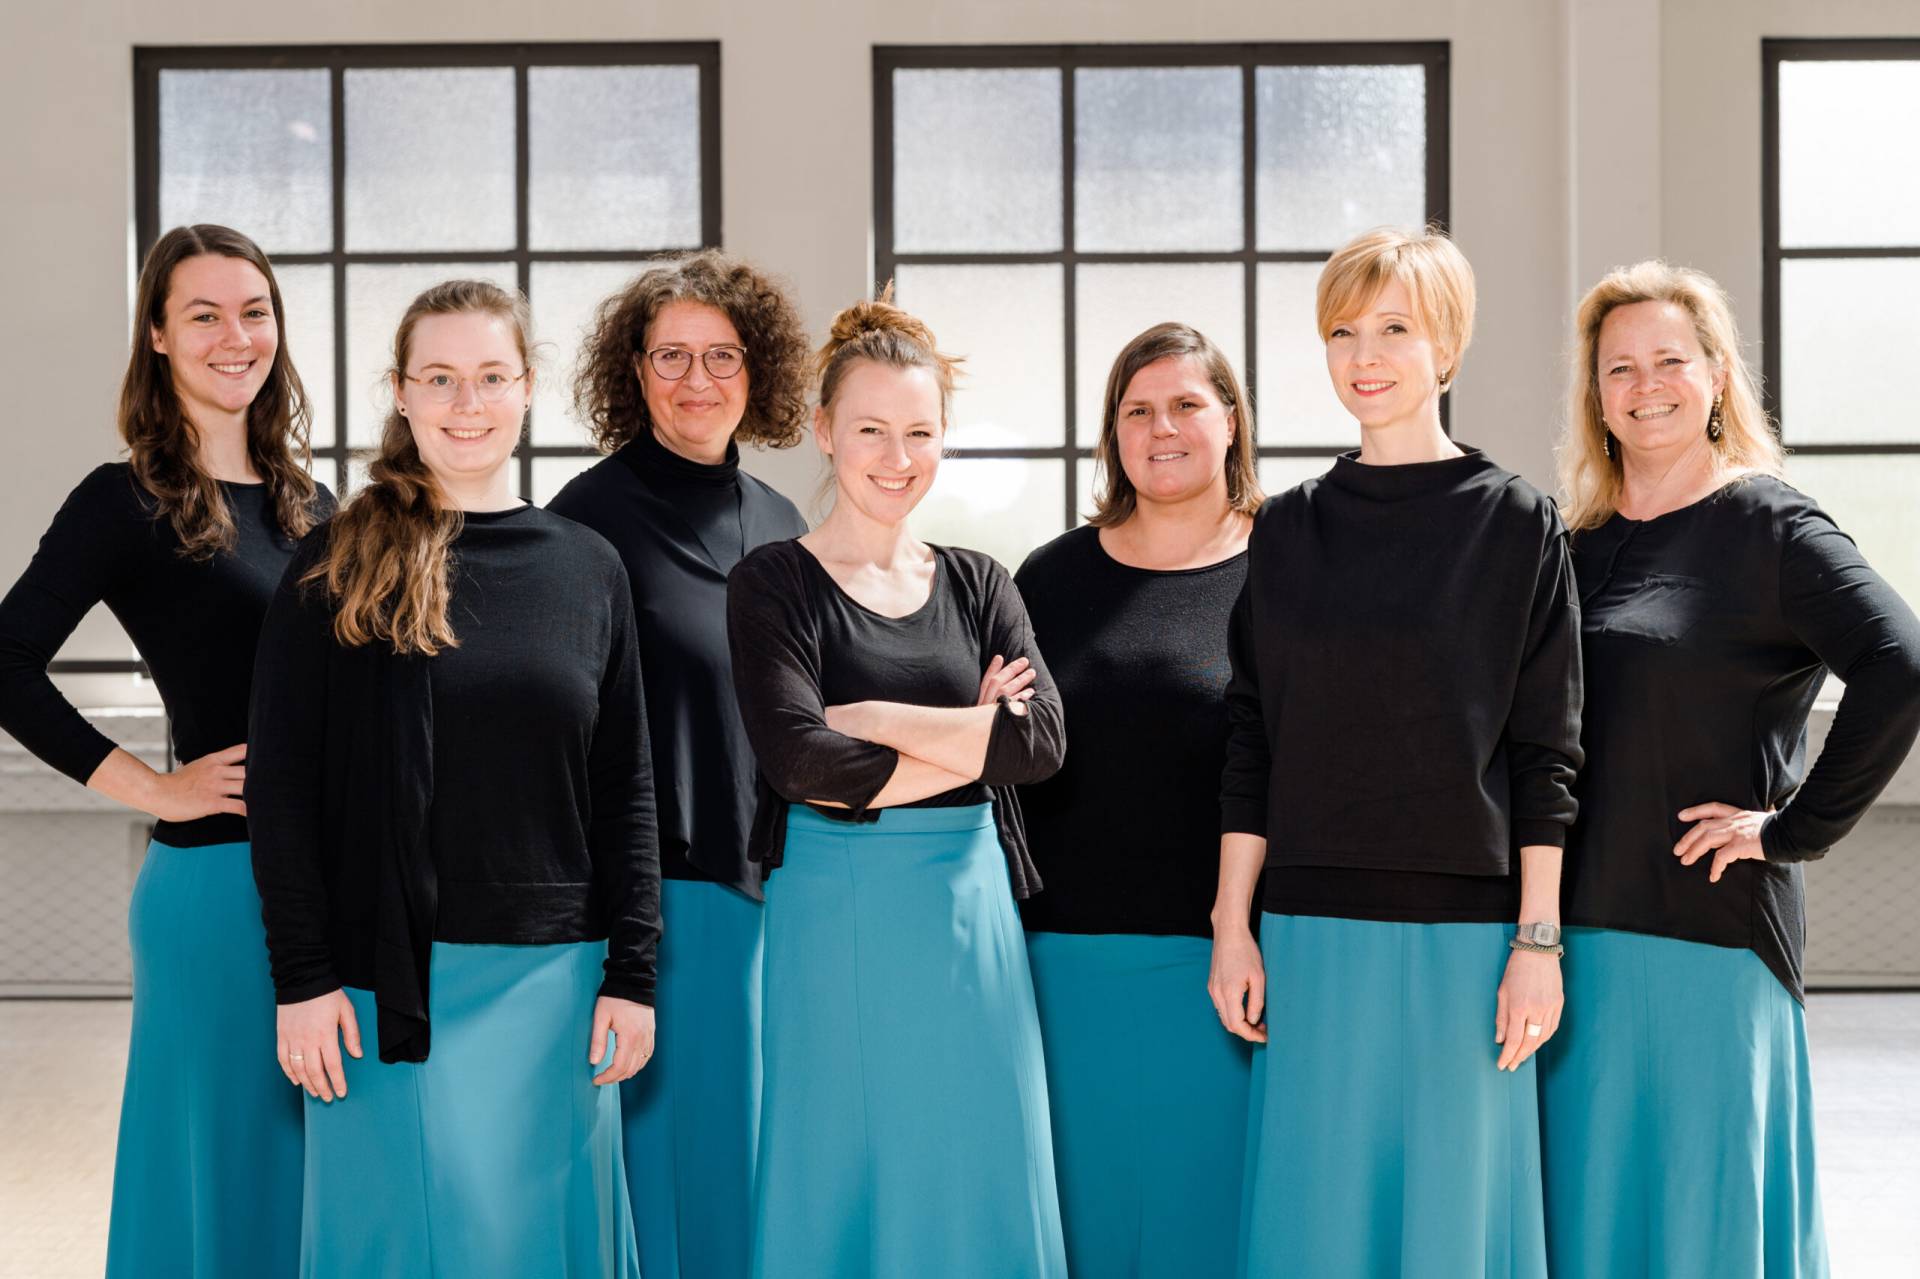 Sieben lächelnde Frauen in blauen Röcken und schwarzen Oberteilen vor einer hellen Fensterfront